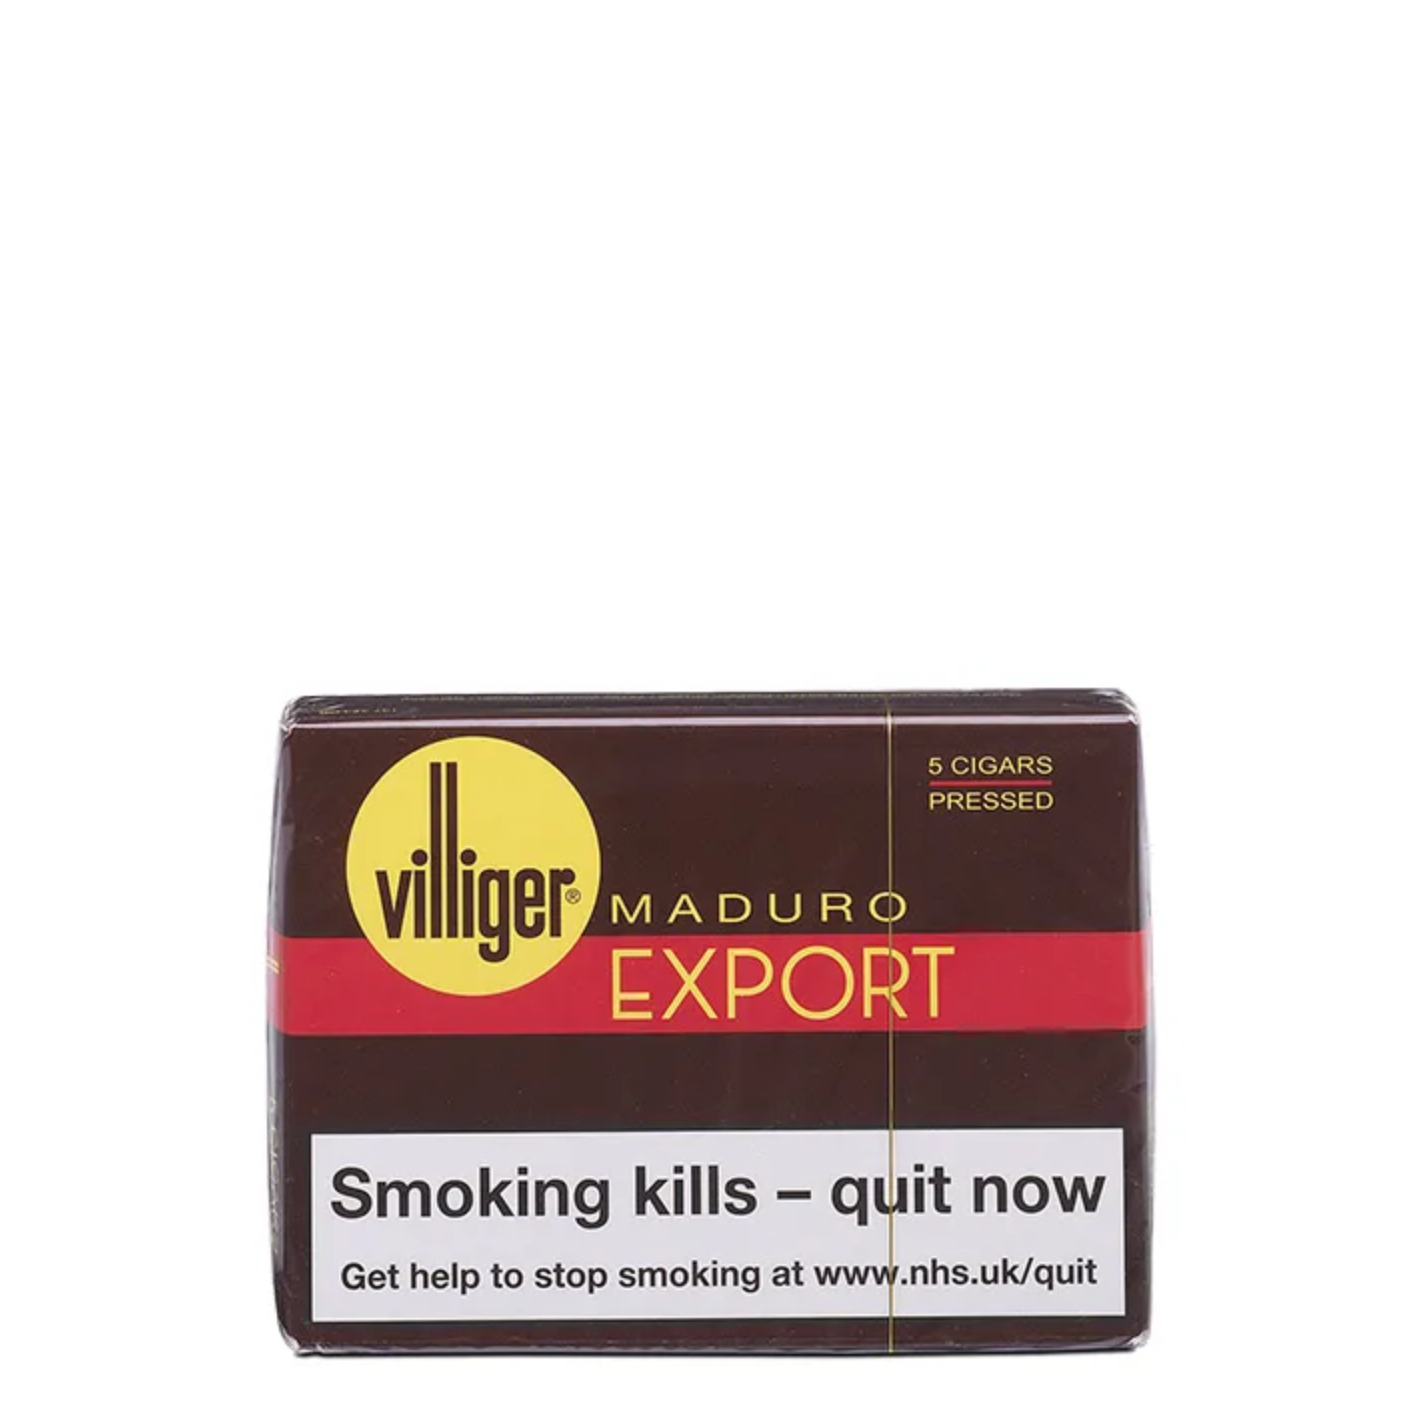 Villiger Maduro Export, 5 pack cigars